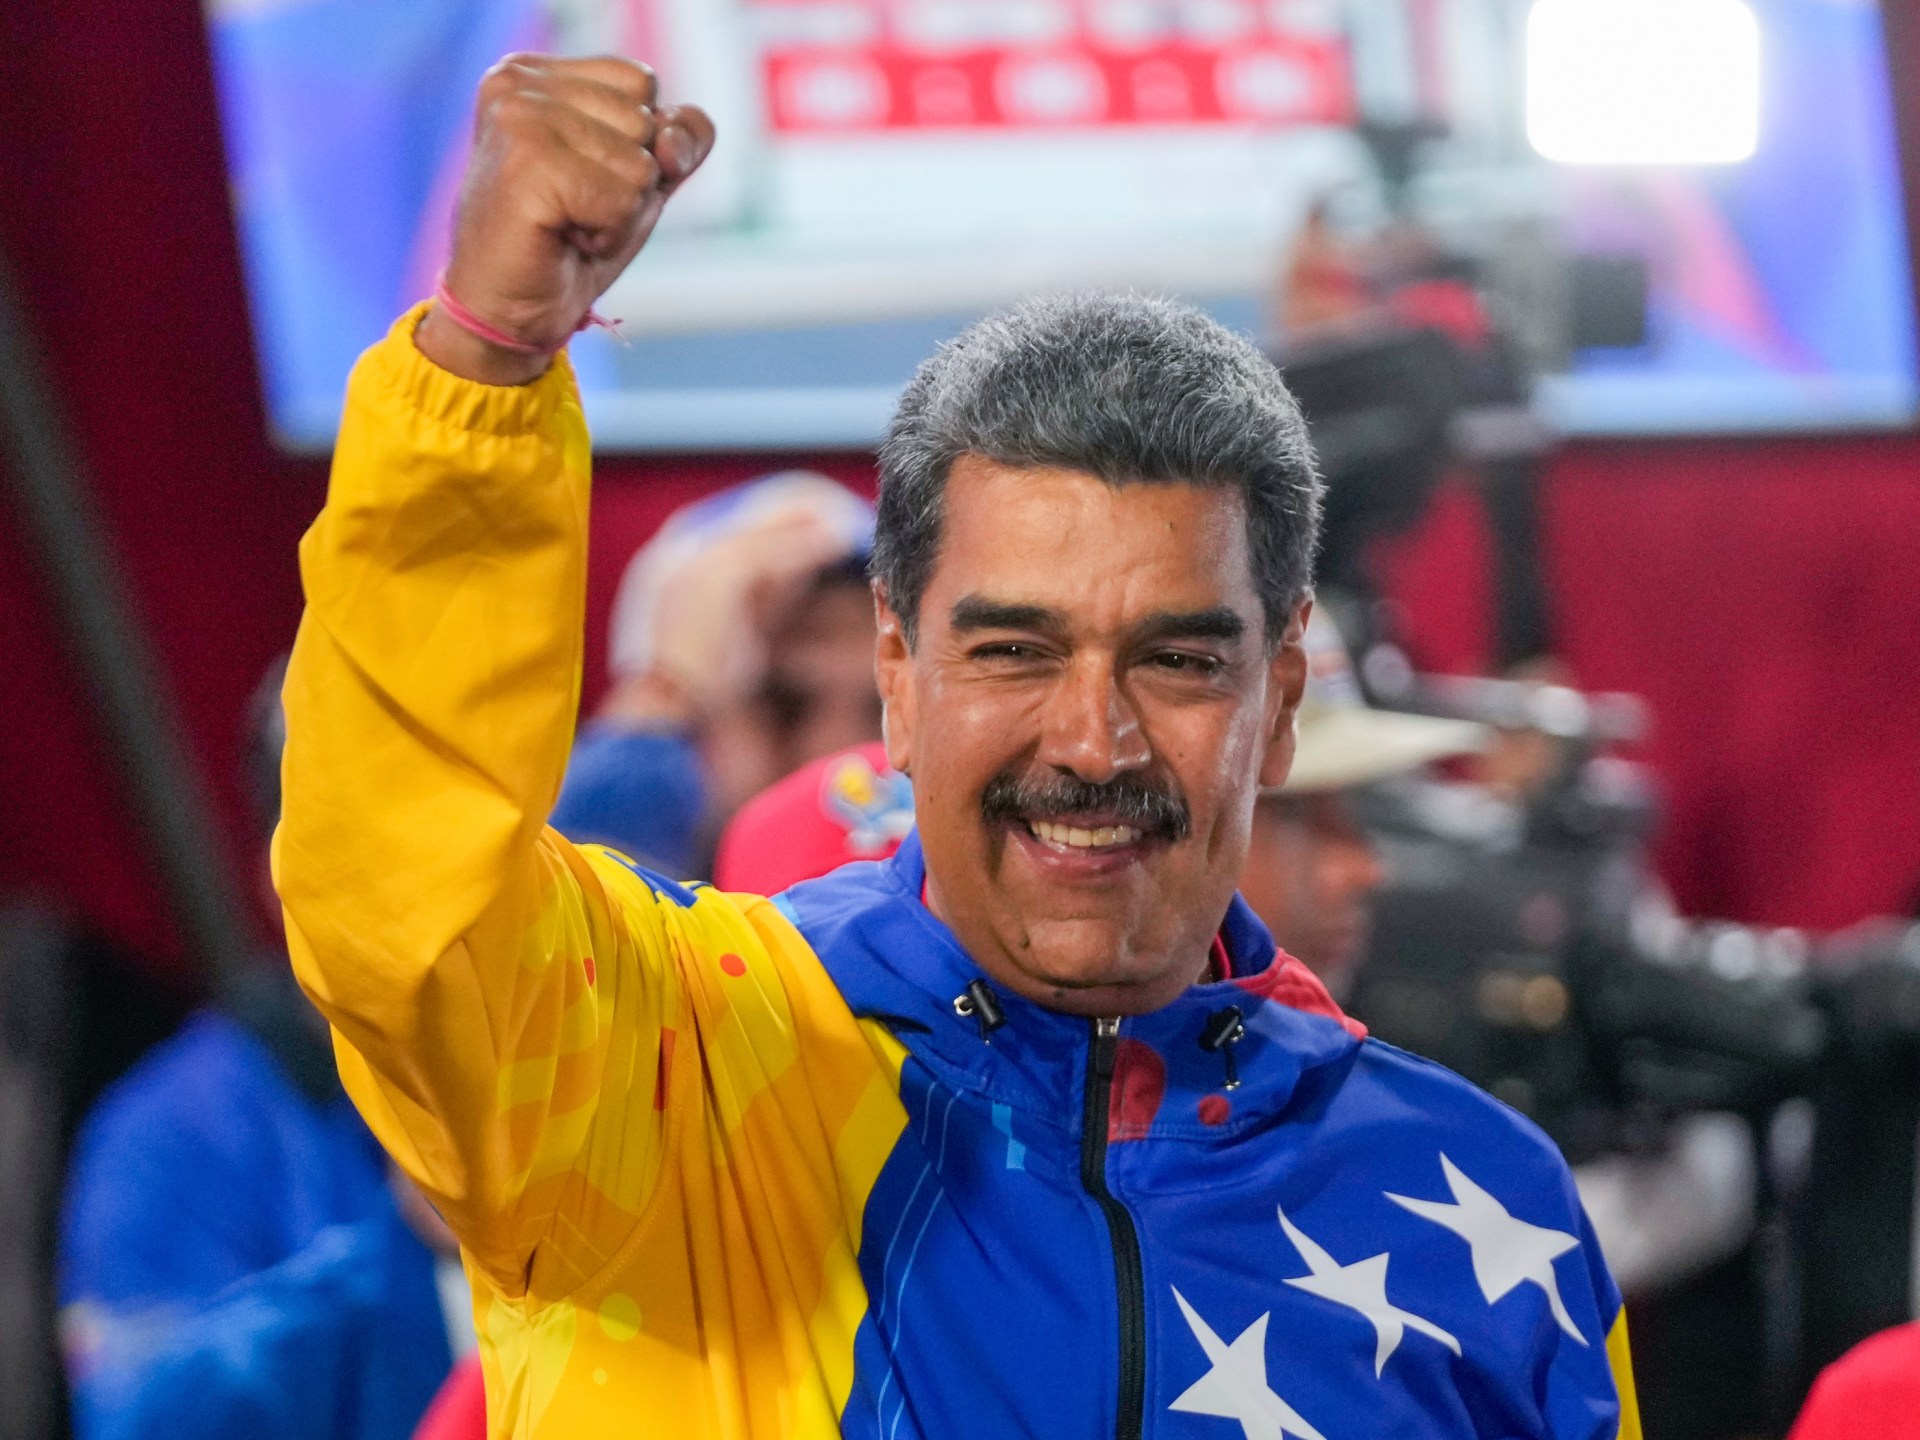 Stark split in world reactions to disputed Venezuela election